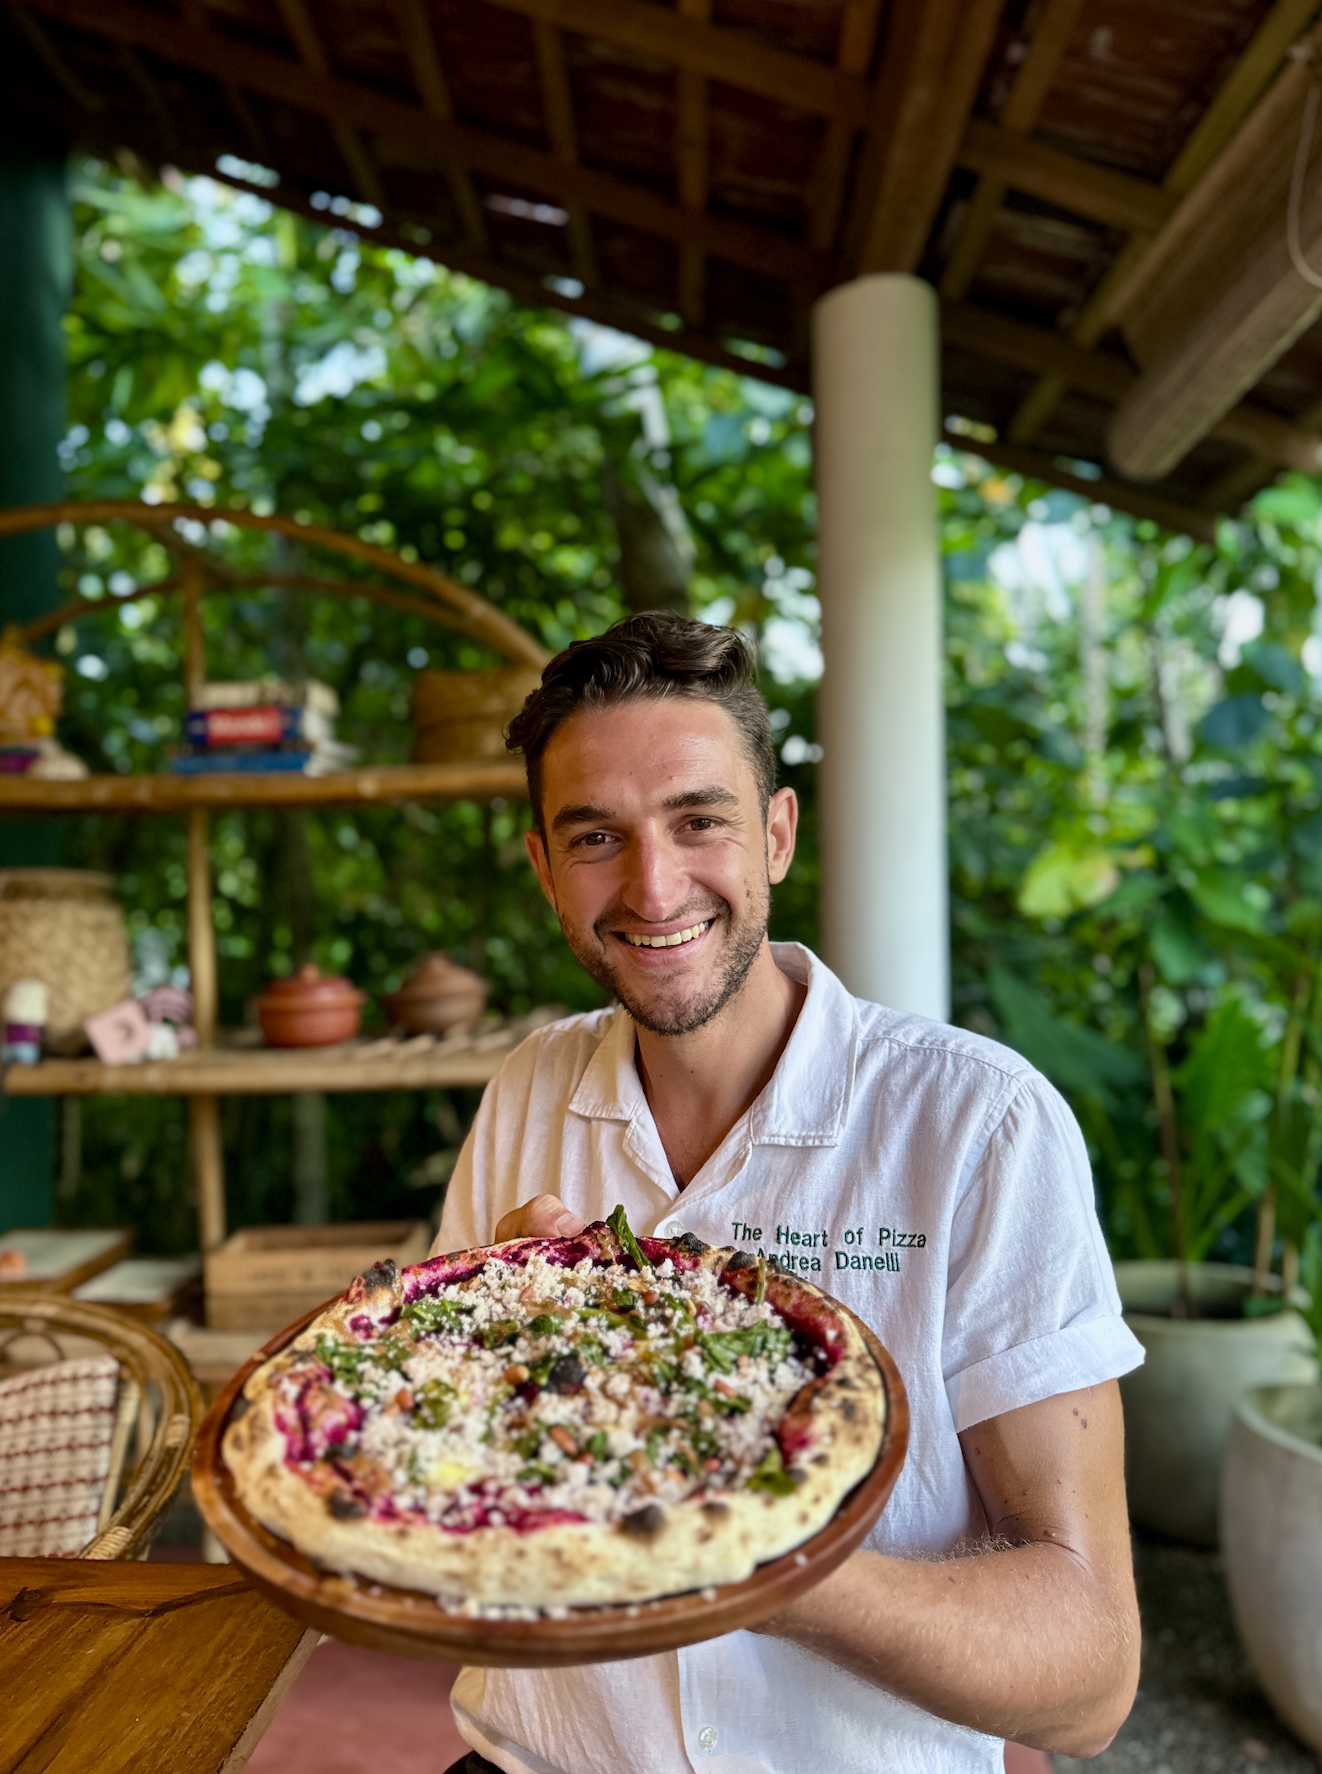 sourdough pizza expert consultant recipe creator chef andrea danelli from sri lanka england italy europe @theheartofpizza on instagram social media 9